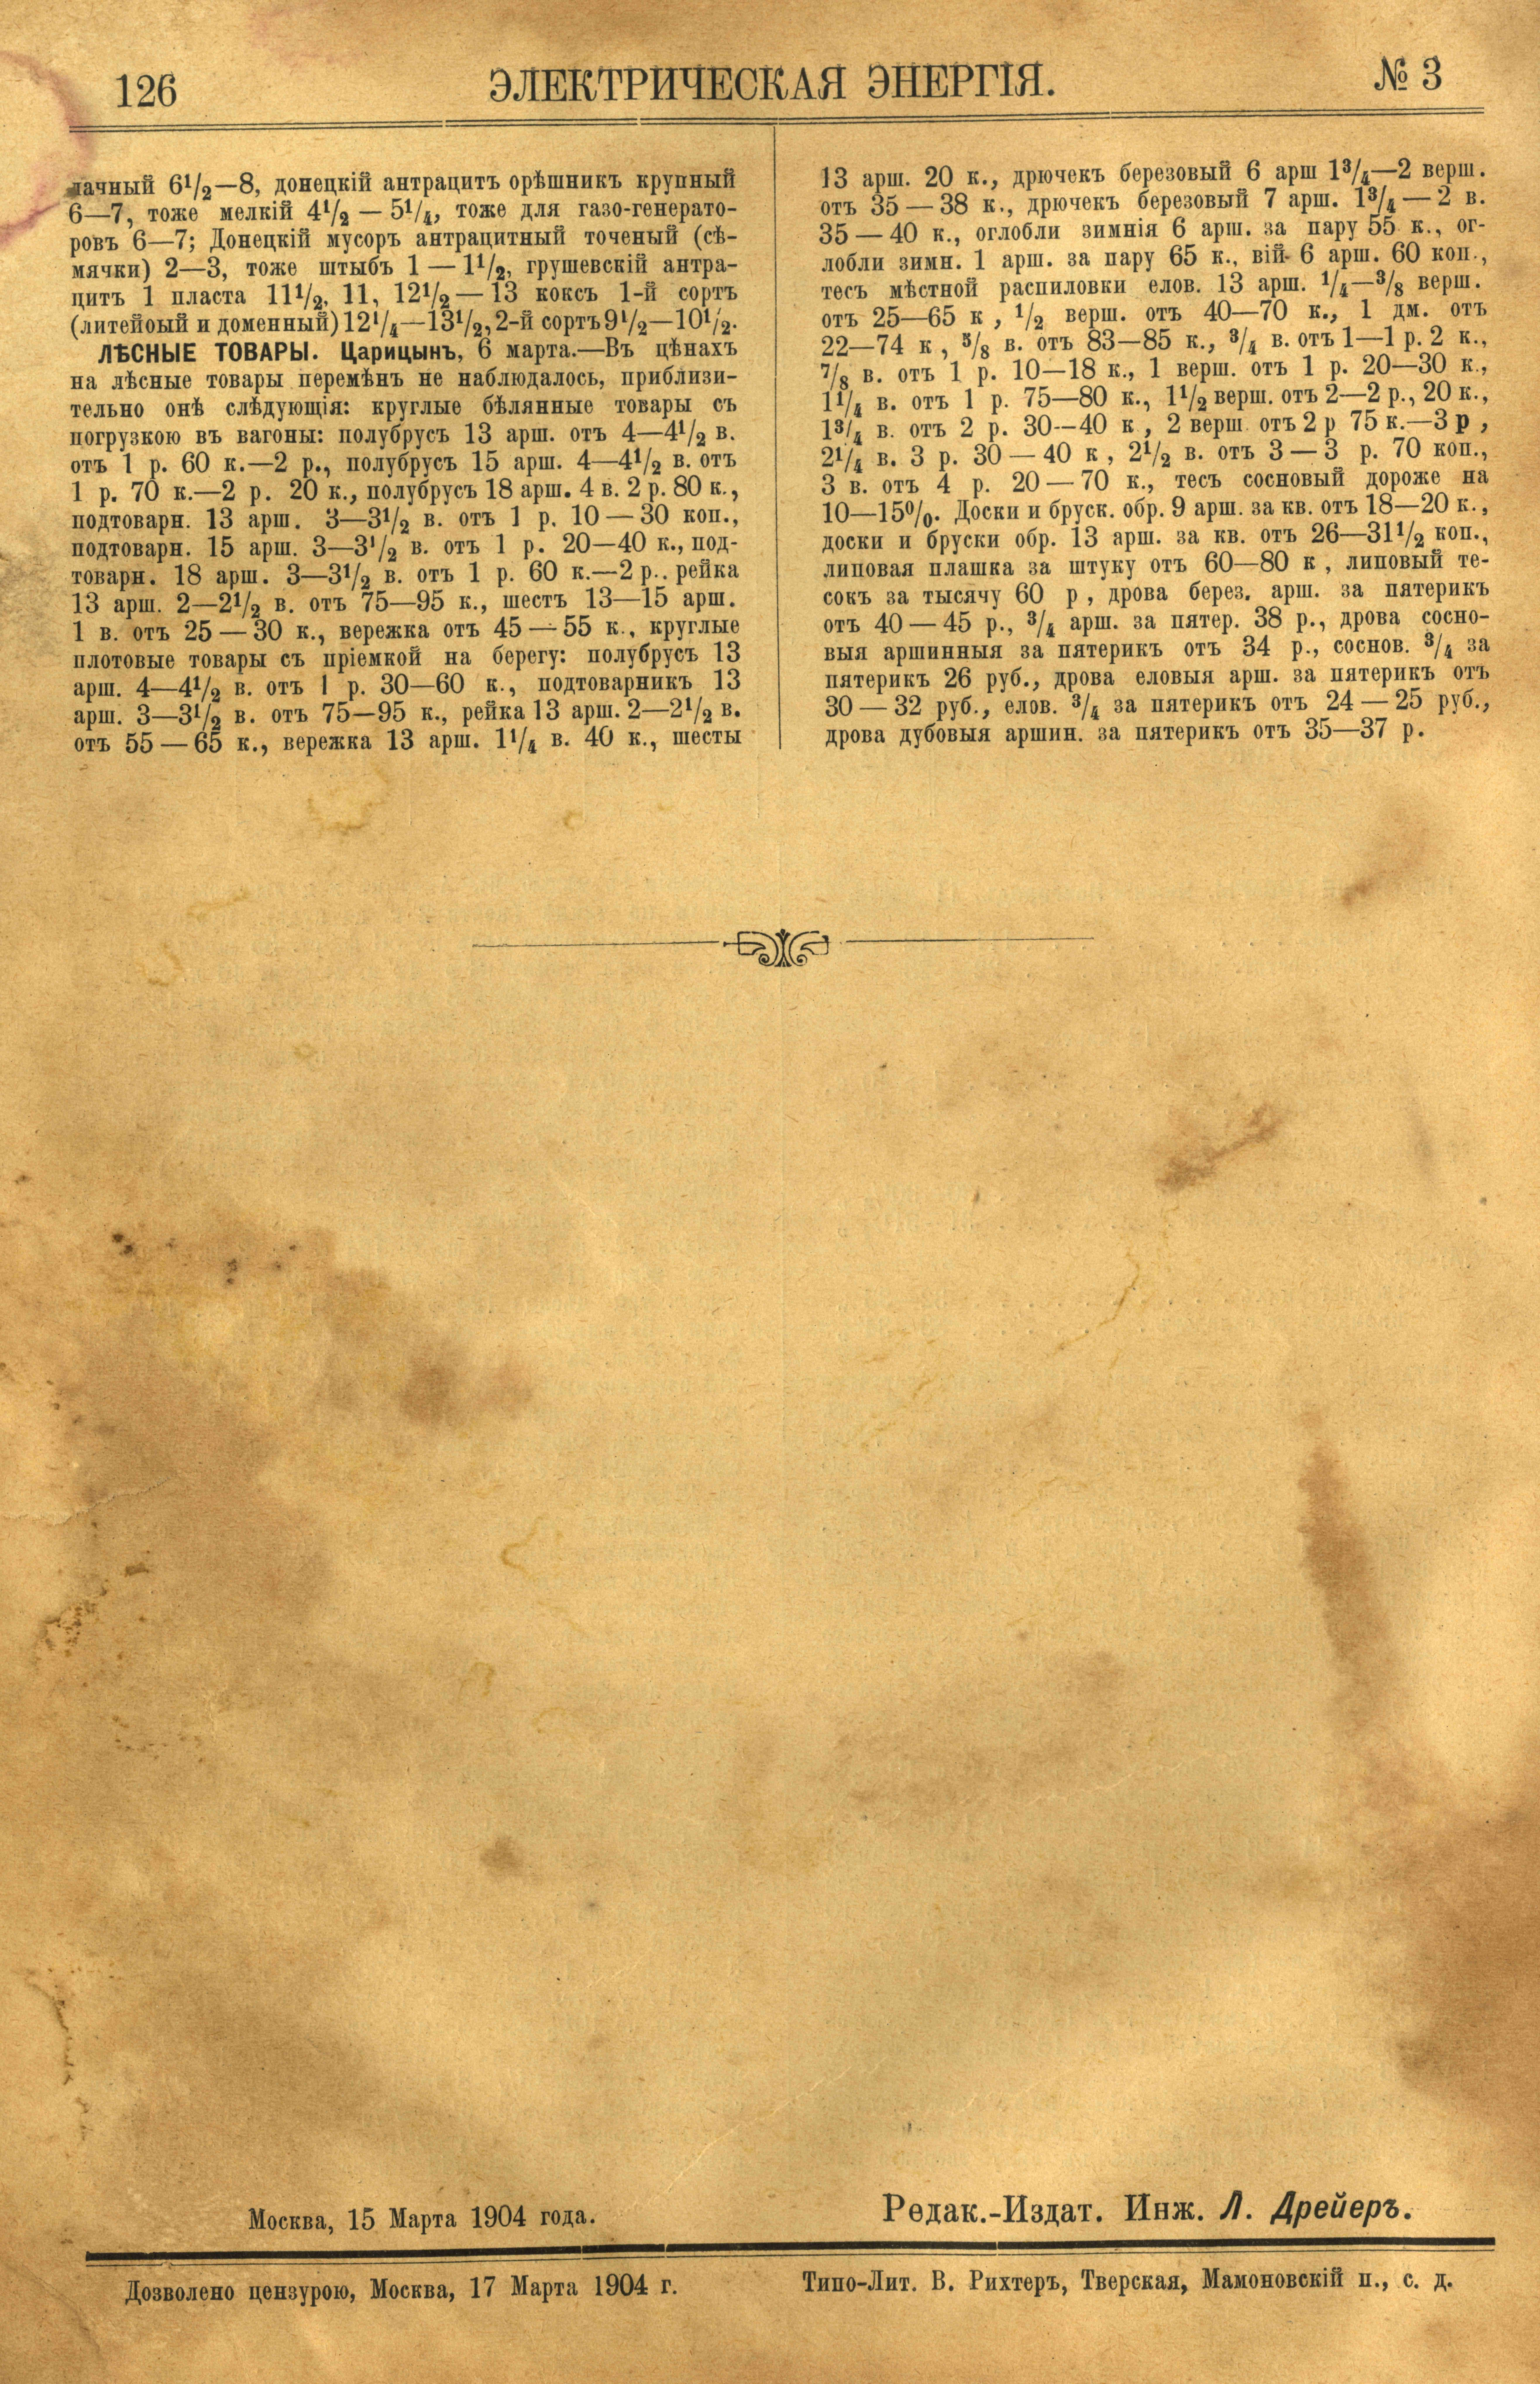 Рис. 1. Журнал Электрическая Энергiя, 3 номер, март, 1904 года, страница 126